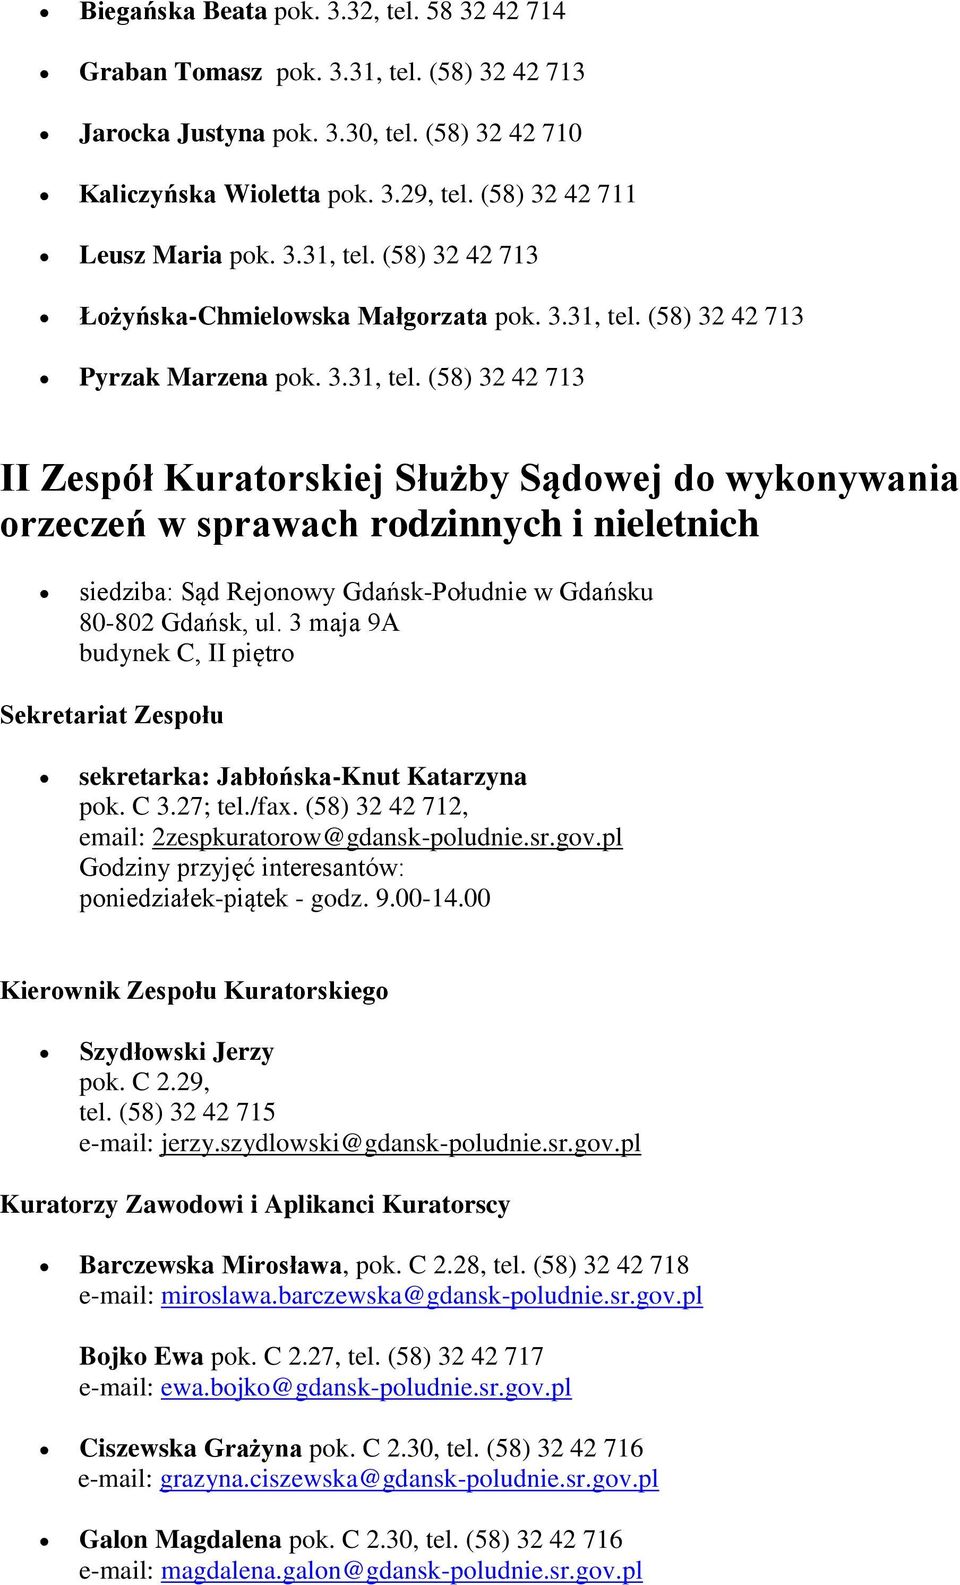 3 maja 9A budynek C, II piętro sekretarka: Jabłońska-Knut Katarzyna pok. C 3.27; tel./fax. (58) 32 42 712, email: 2zespkuratorow@gdansk-poludnie.sr.gov.